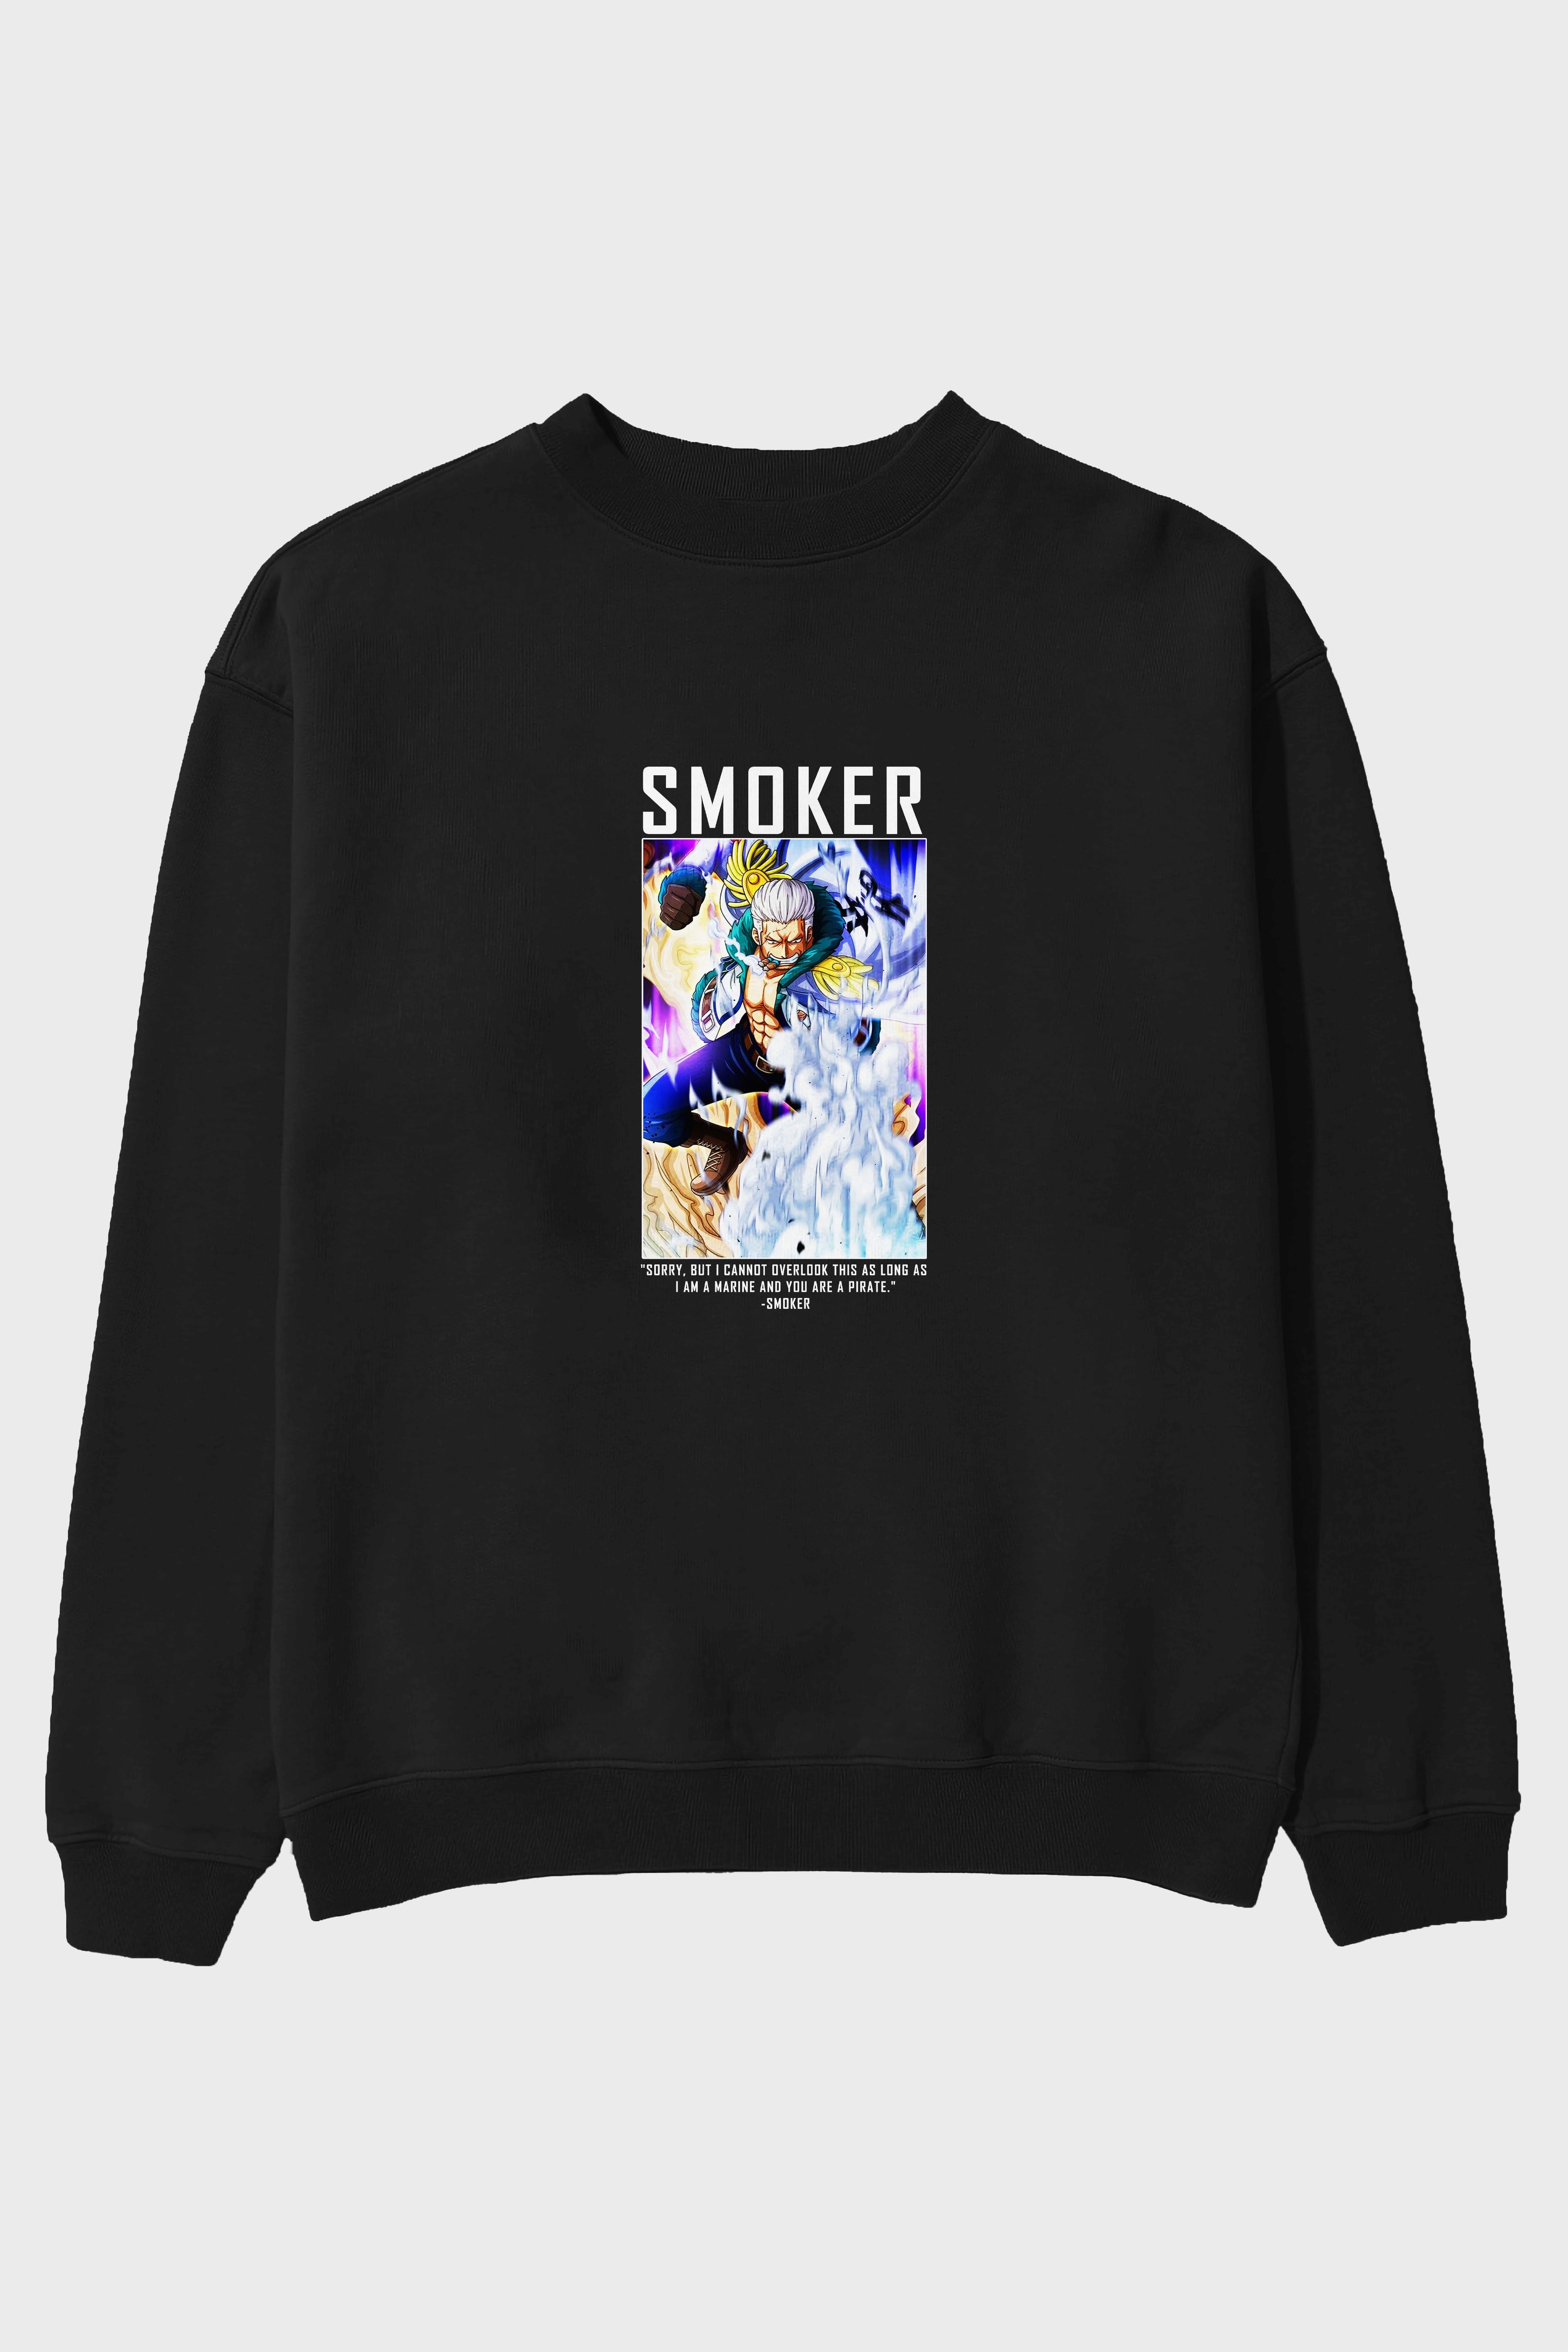 Smoker Ön Baskılı Anime Oversize Sweatshirt Erkek Kadın Unisex